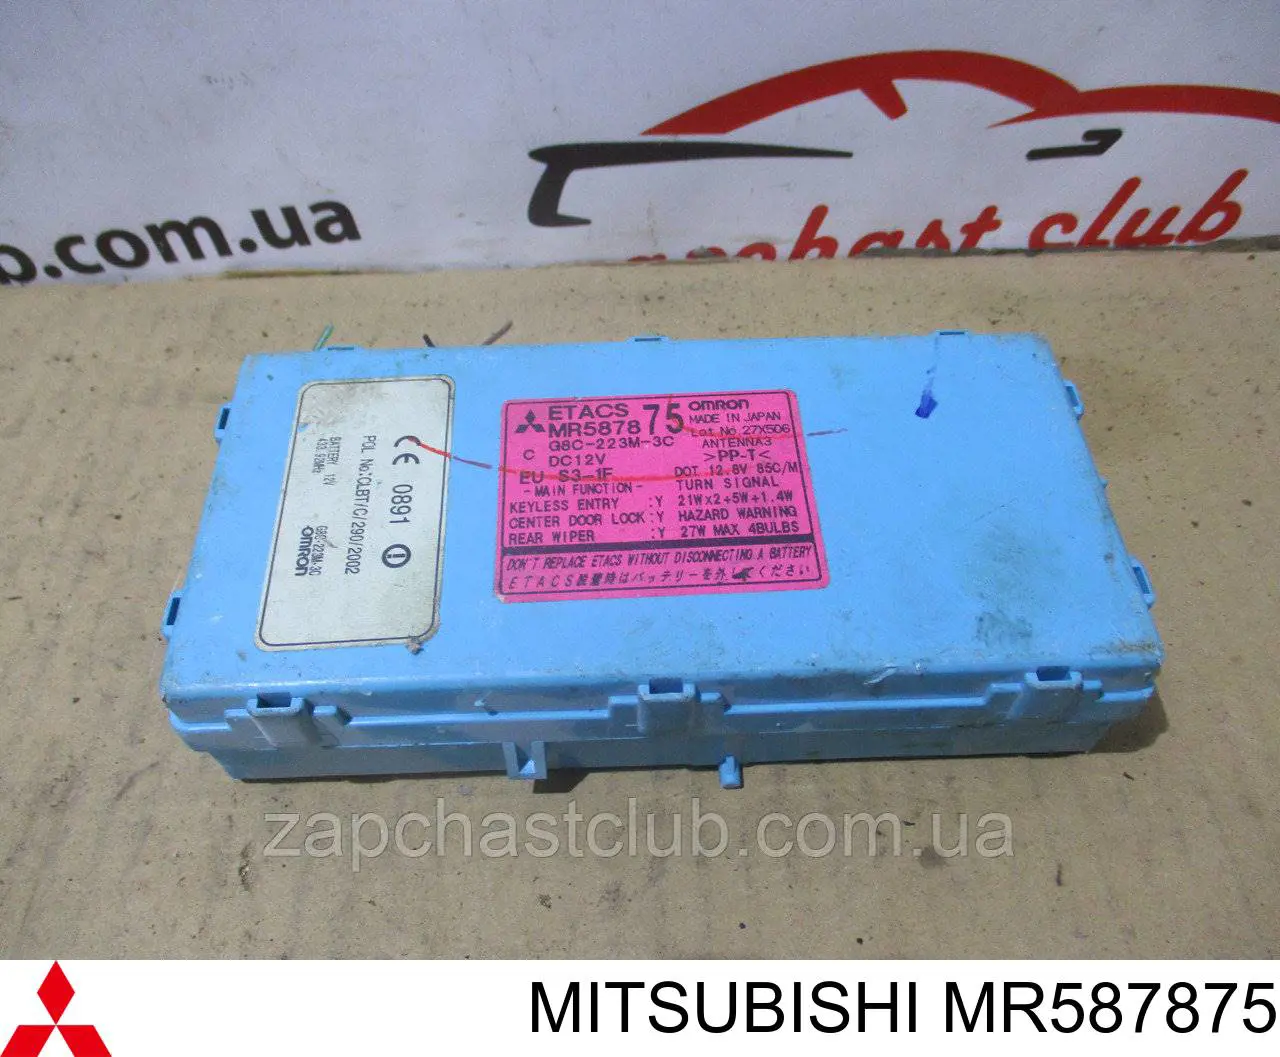 MR587875 Mitsubishi unidade de conforto